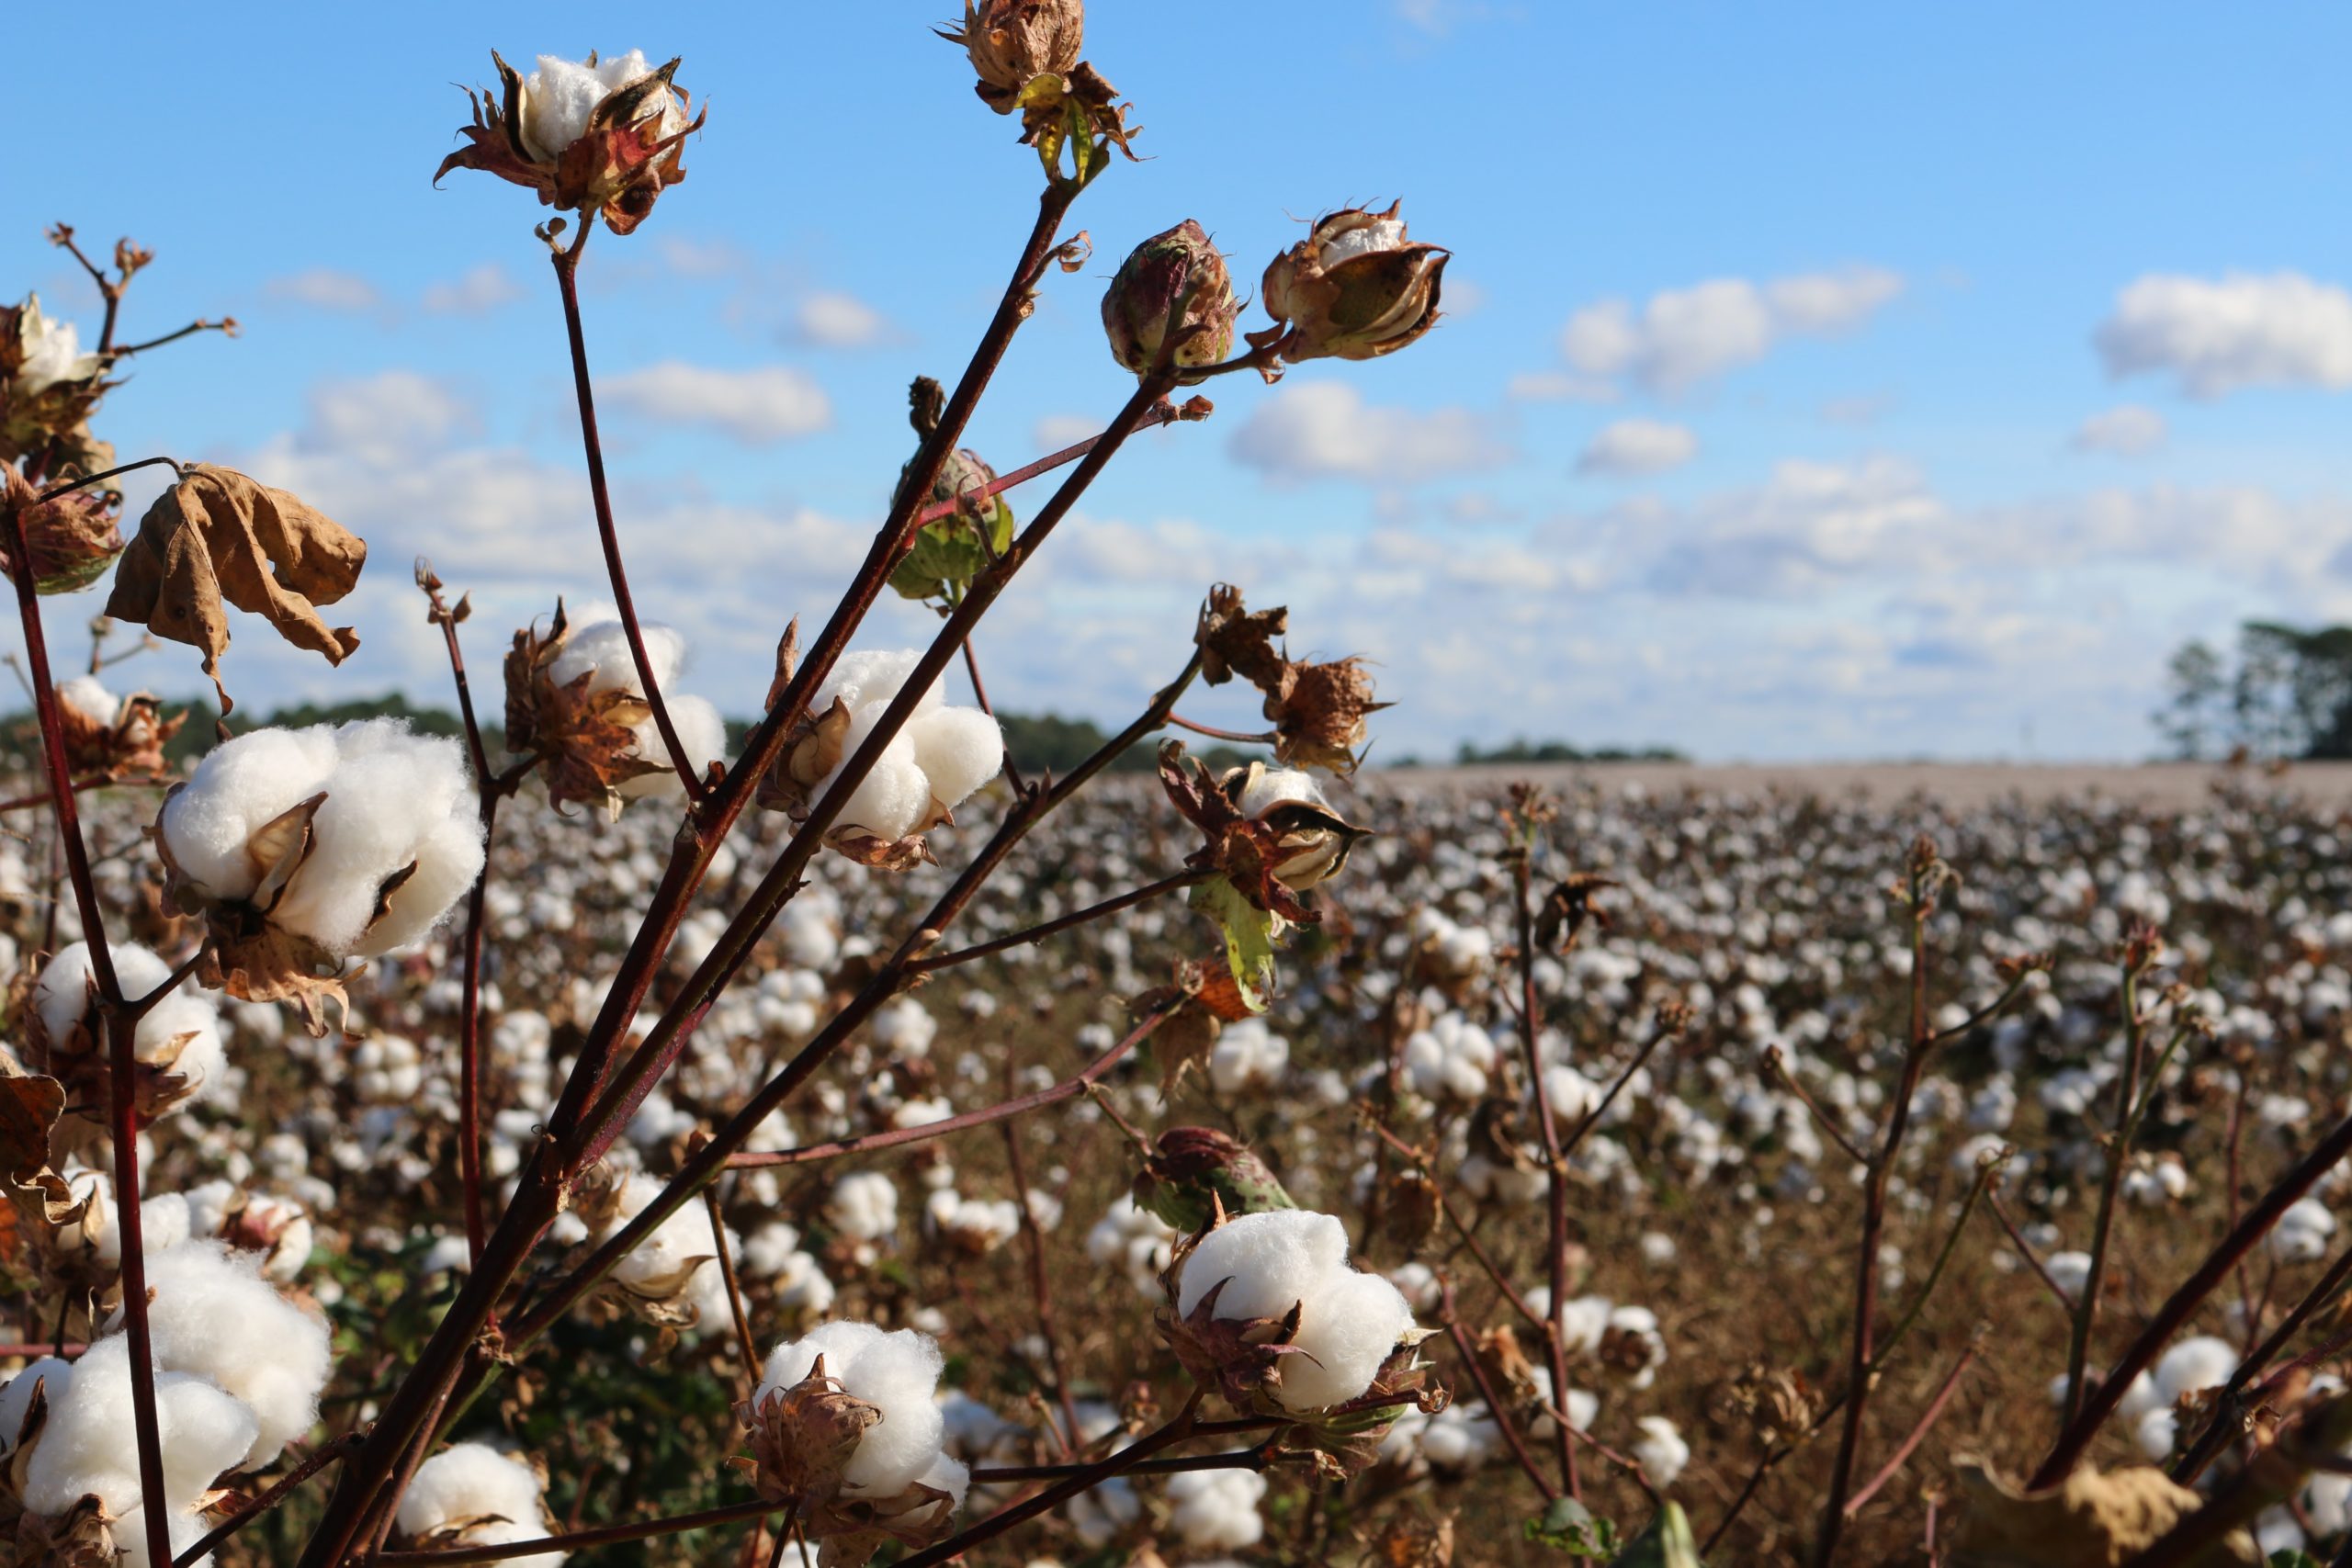 Why Turkish Cotton?